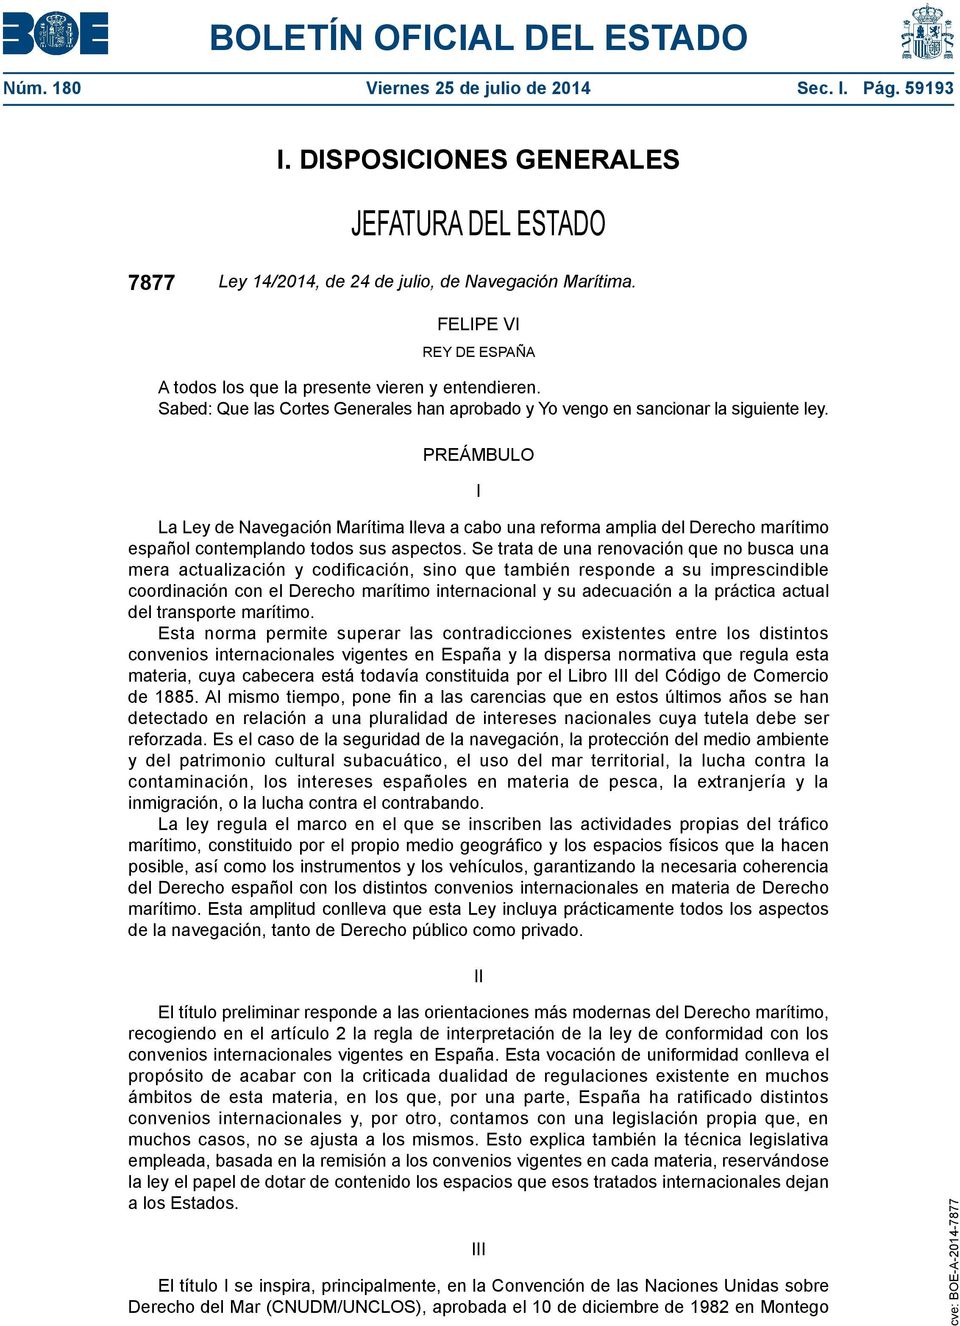 PREÁMBULO I La Ley de Navegación Marítima lleva a cabo una reforma amplia del Derecho marítimo español contemplando todos sus aspectos.